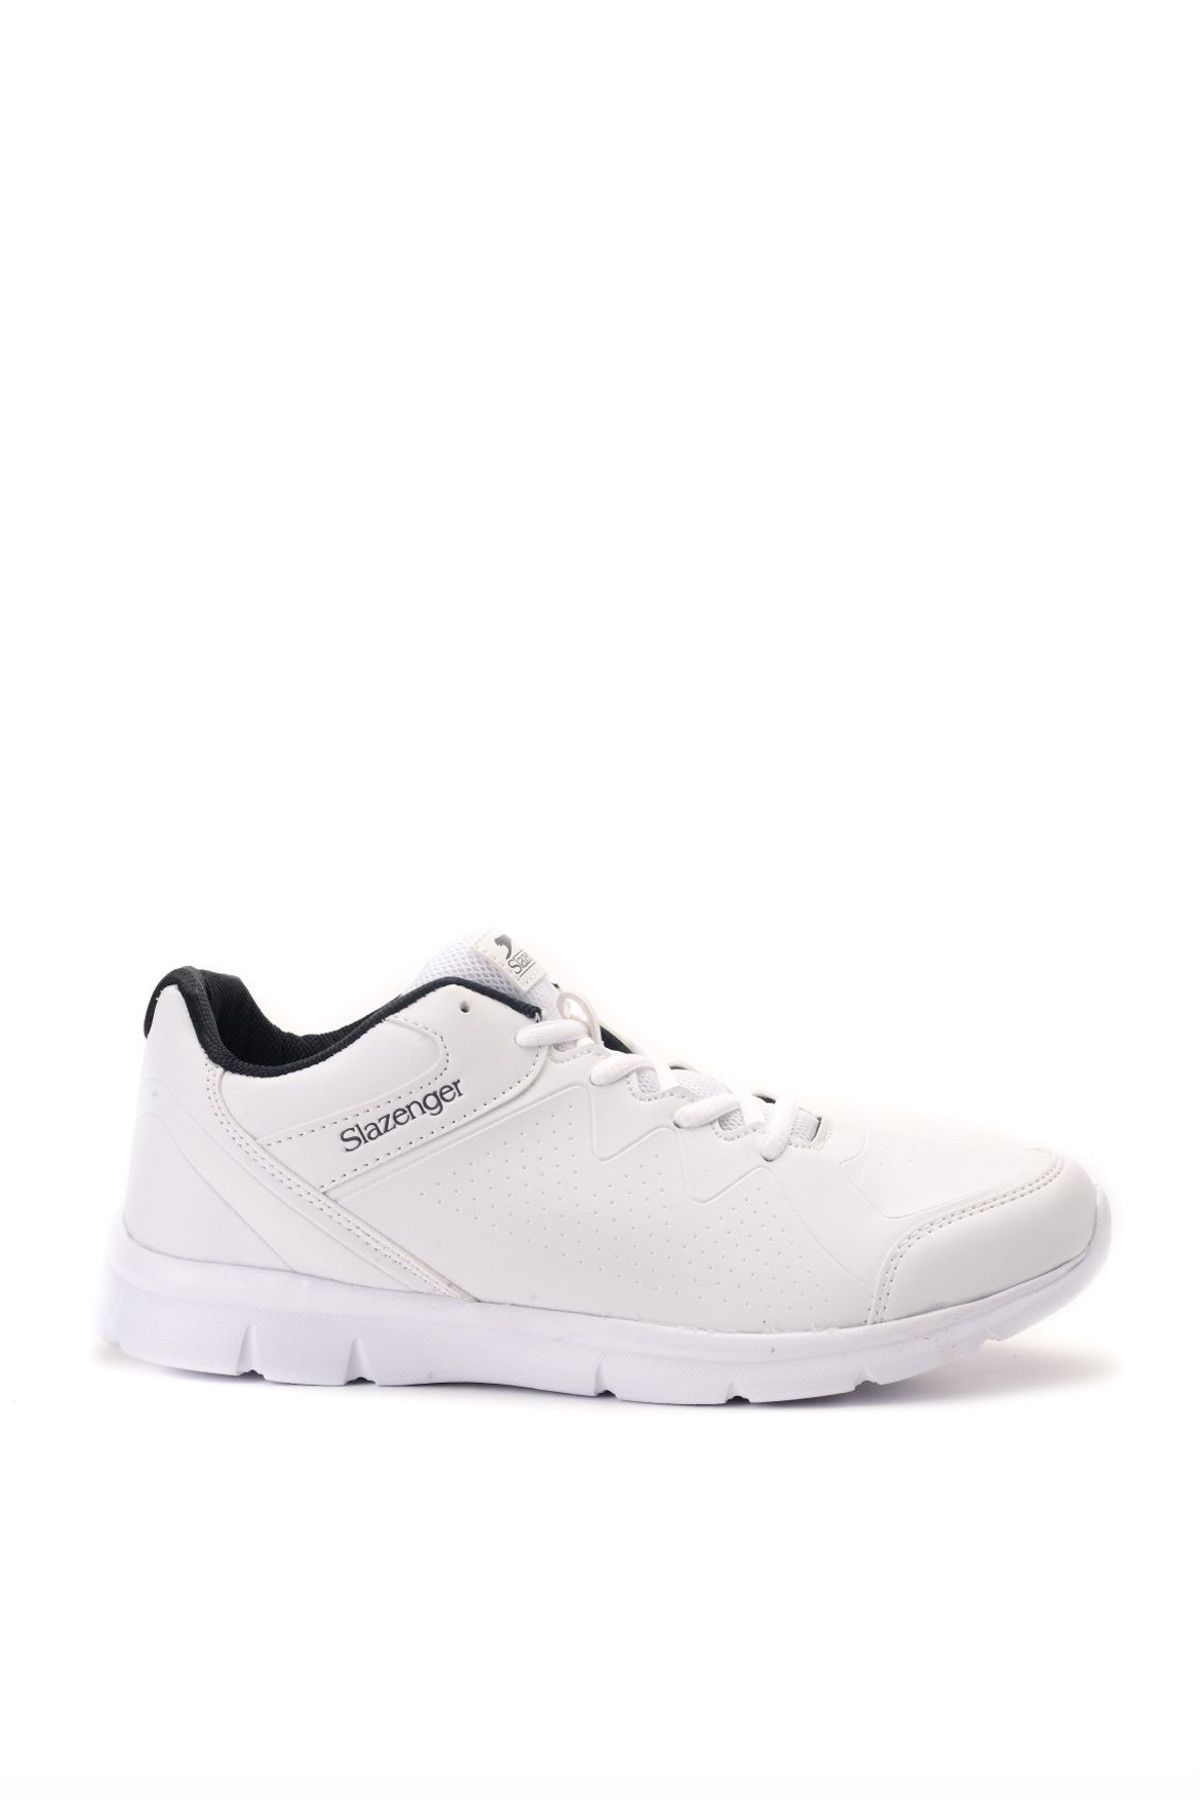 Slazenger Ewa Sneaker Erkek Ayakkabı Beyaz